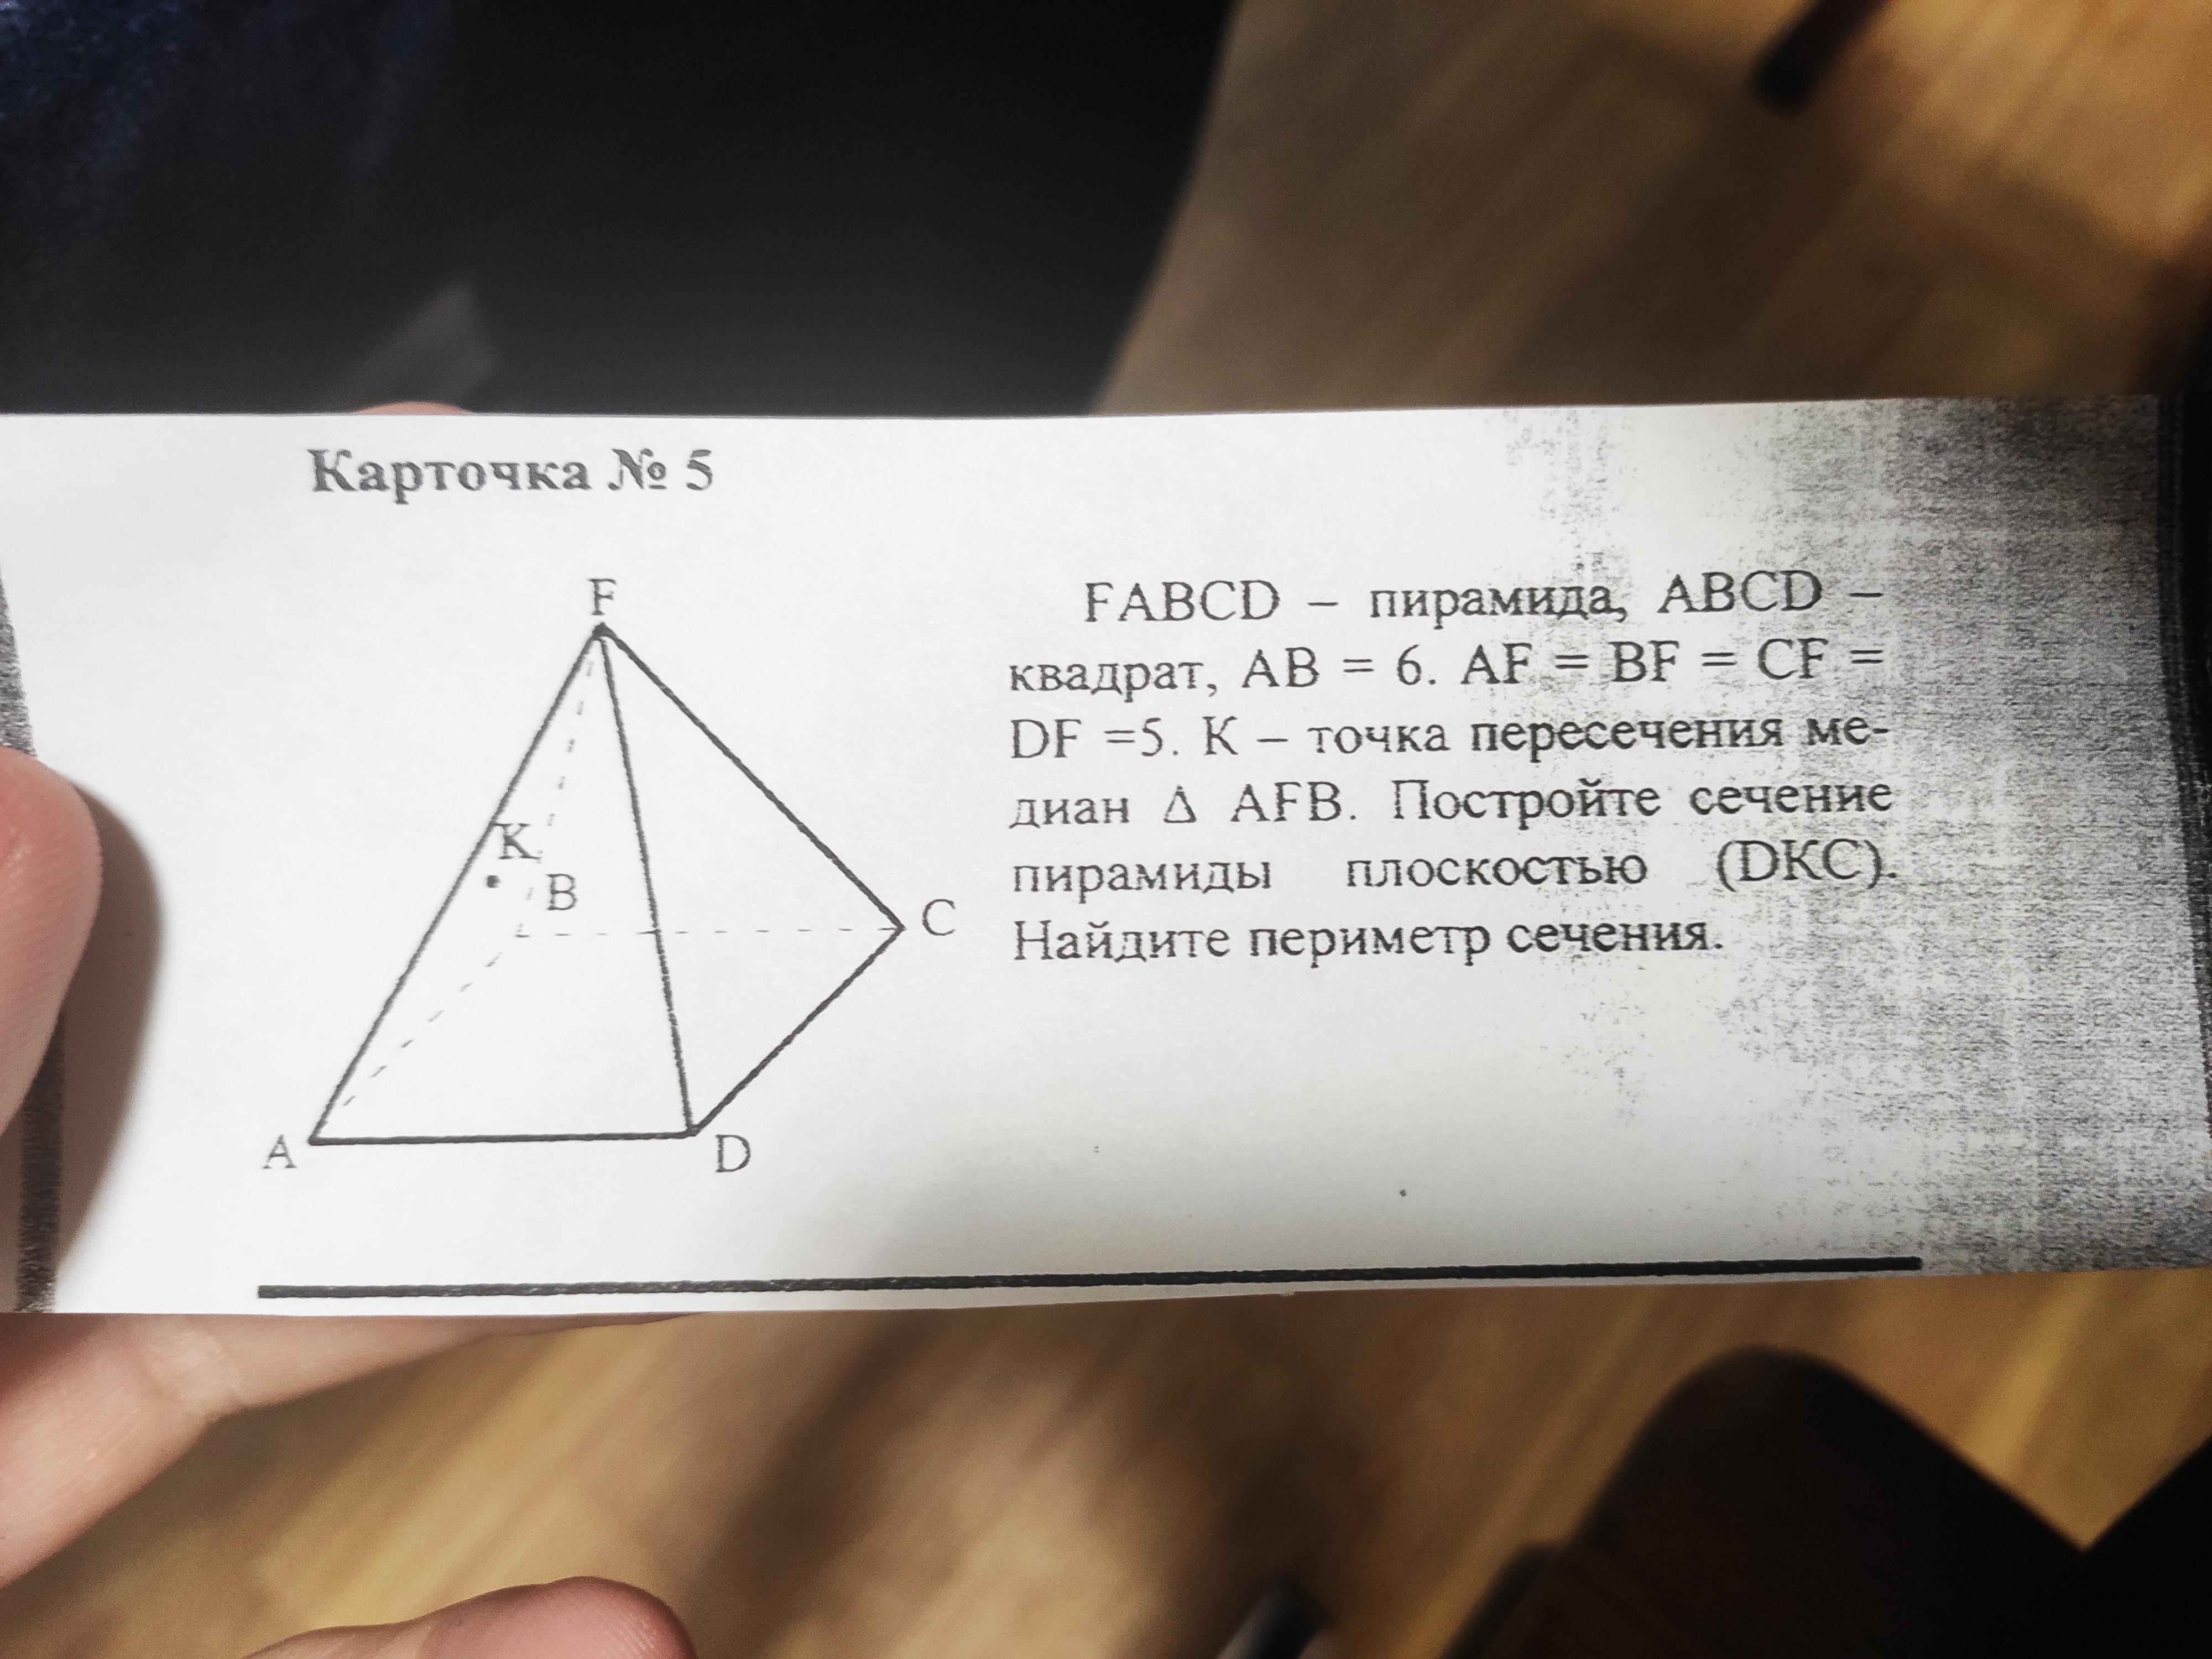 FABCD пирамида ABCD квадрат. .Дано: FABCD - пирамида. Найти периметр сечения пирамиды. Периметр сечения пирамиды